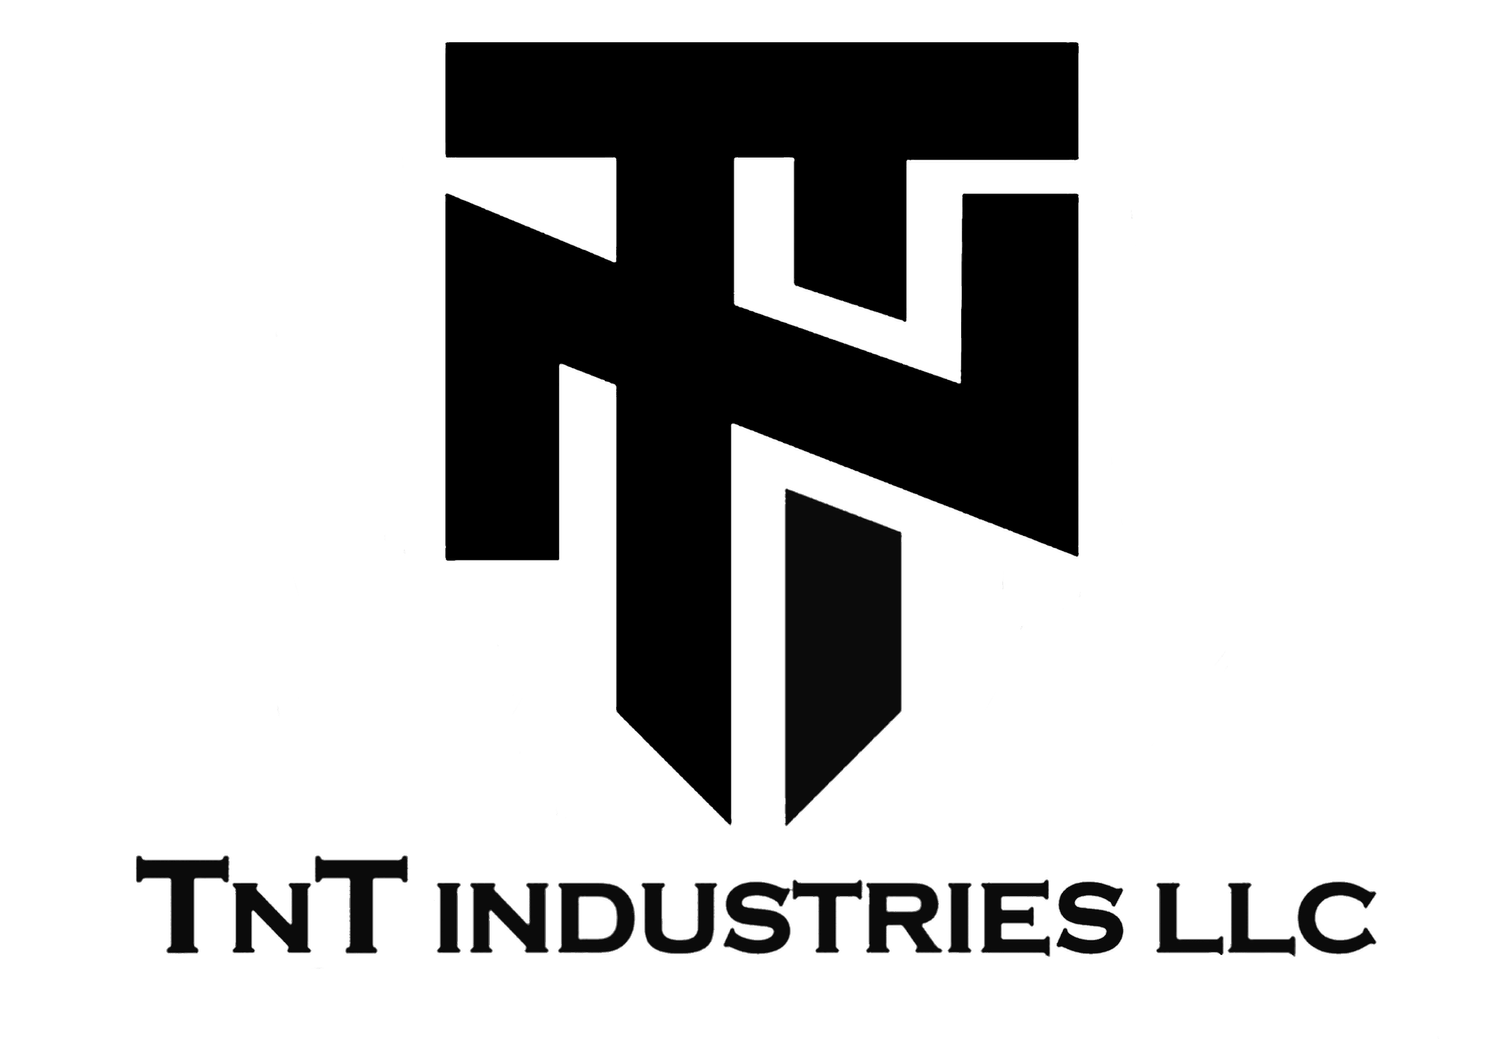 TNT INDUSTRIES LLC